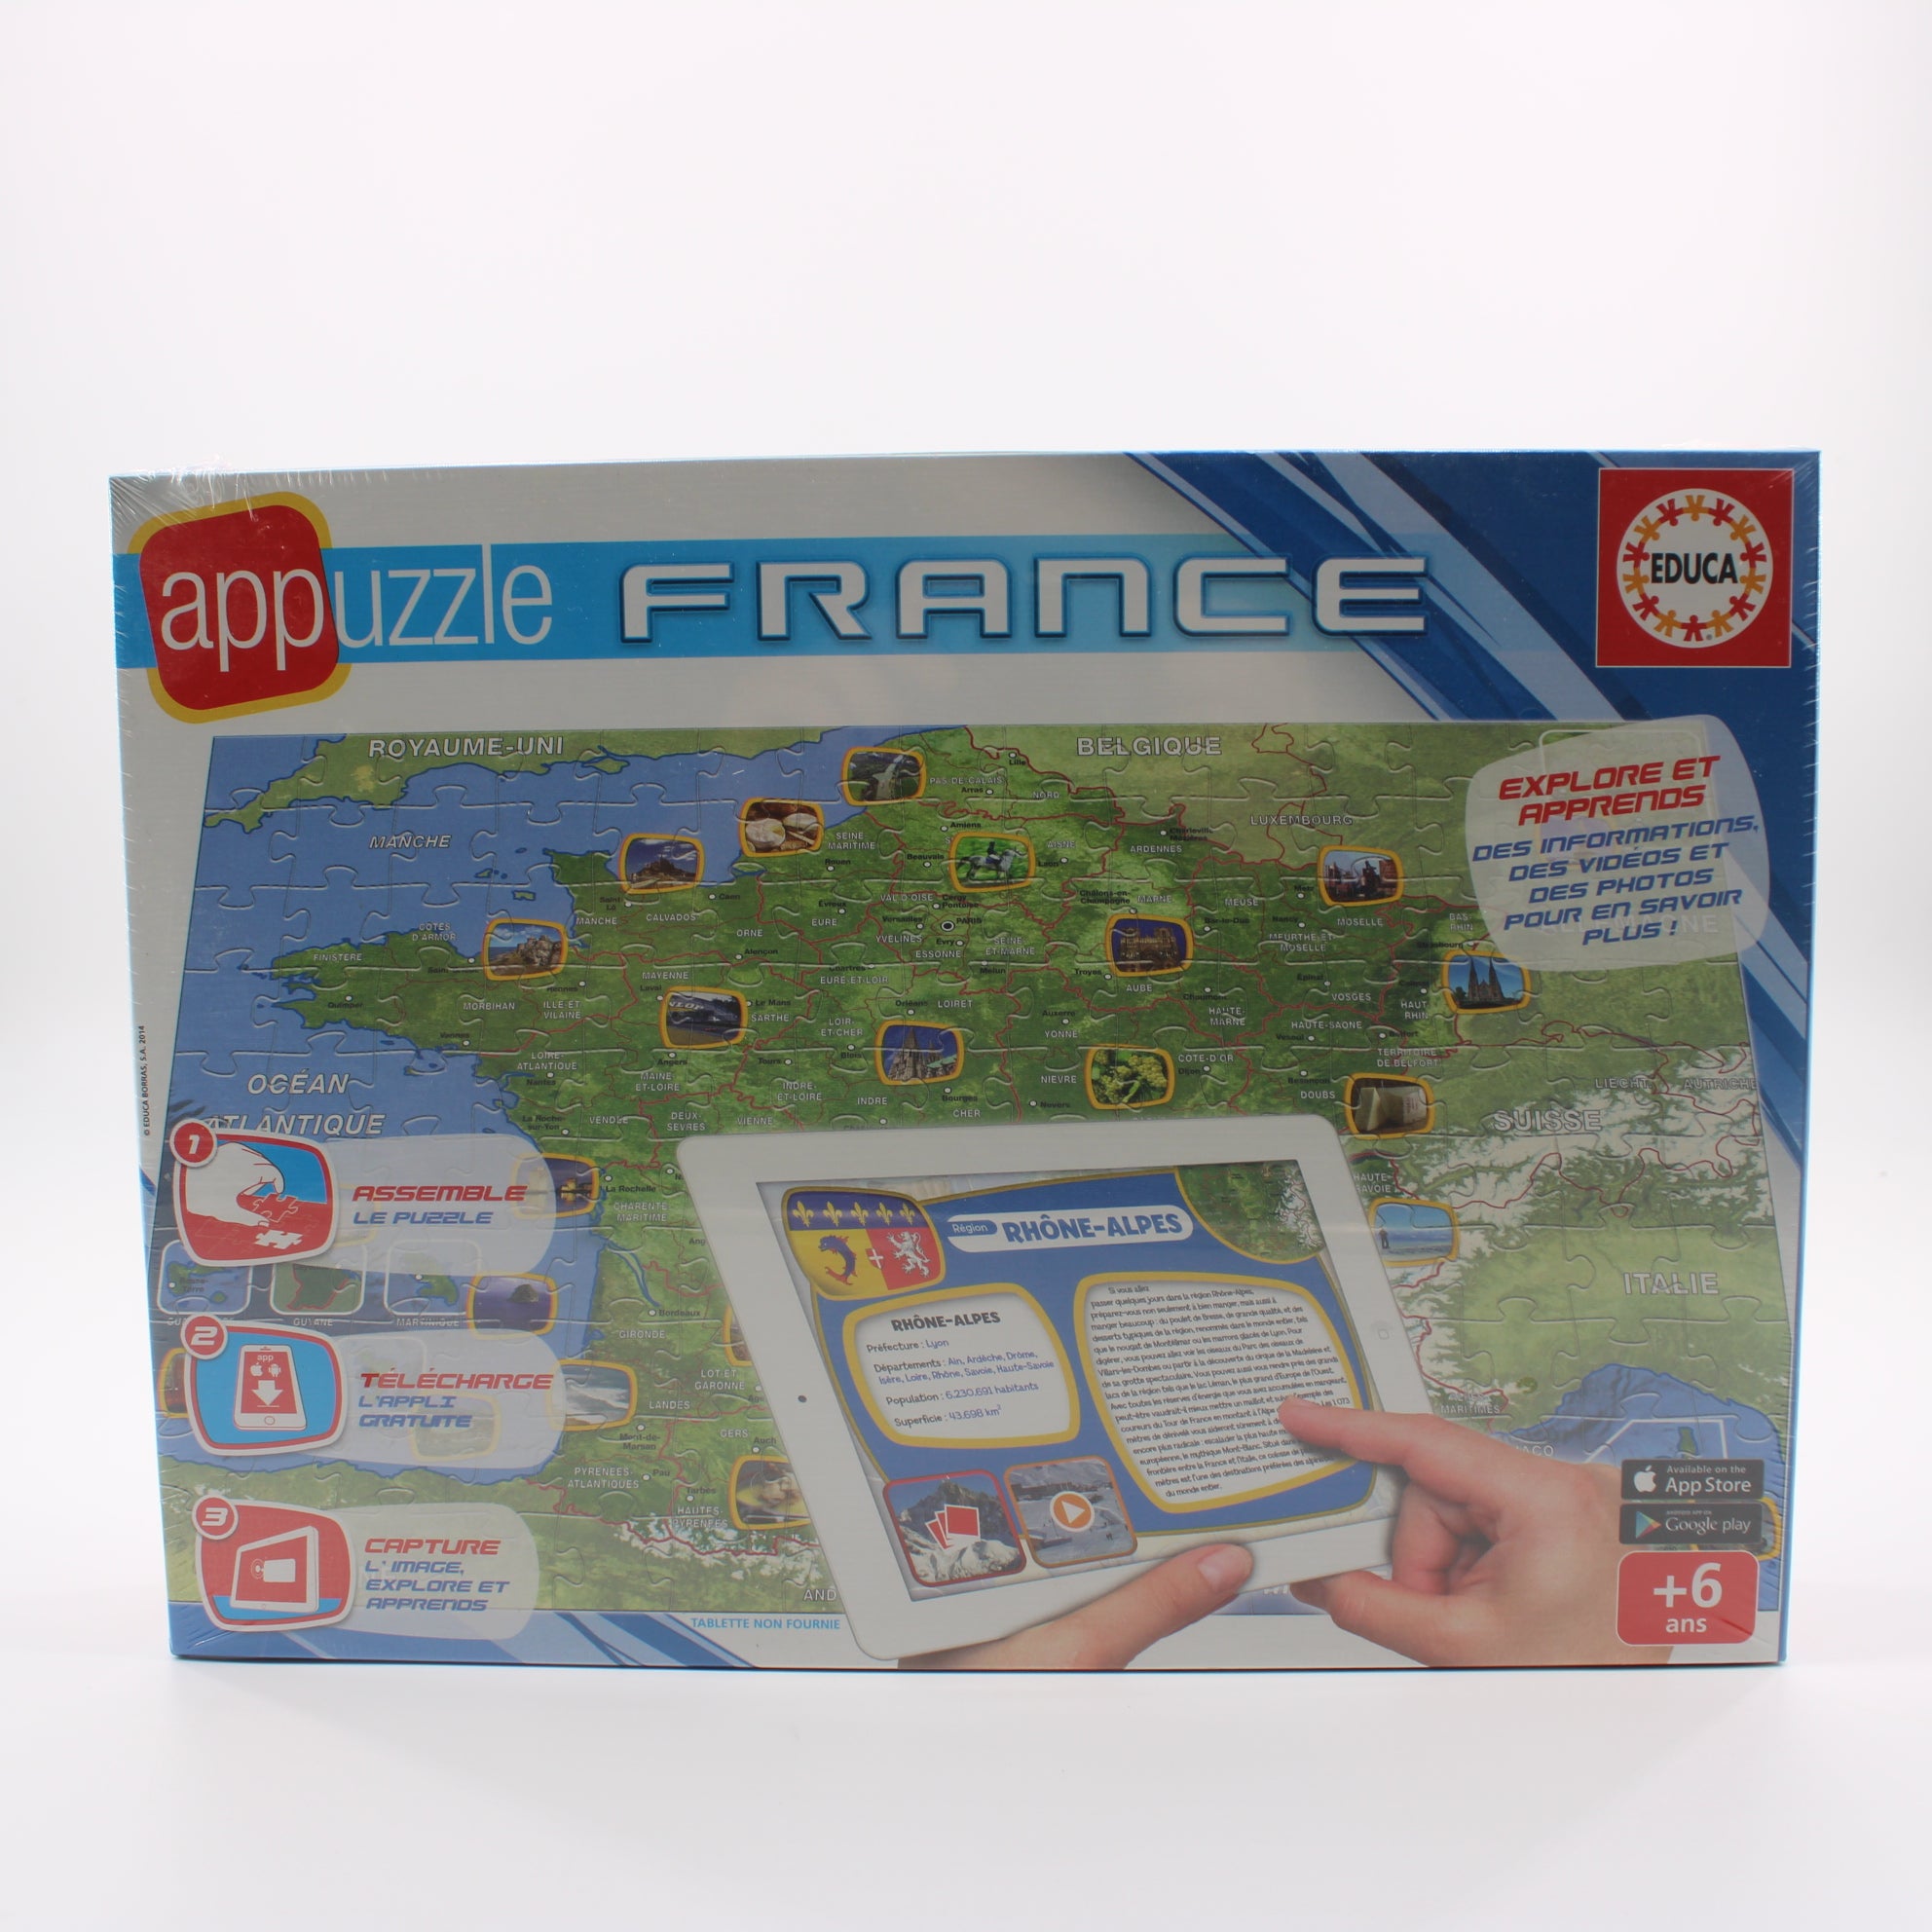 Appuzzle France - 150 pièces